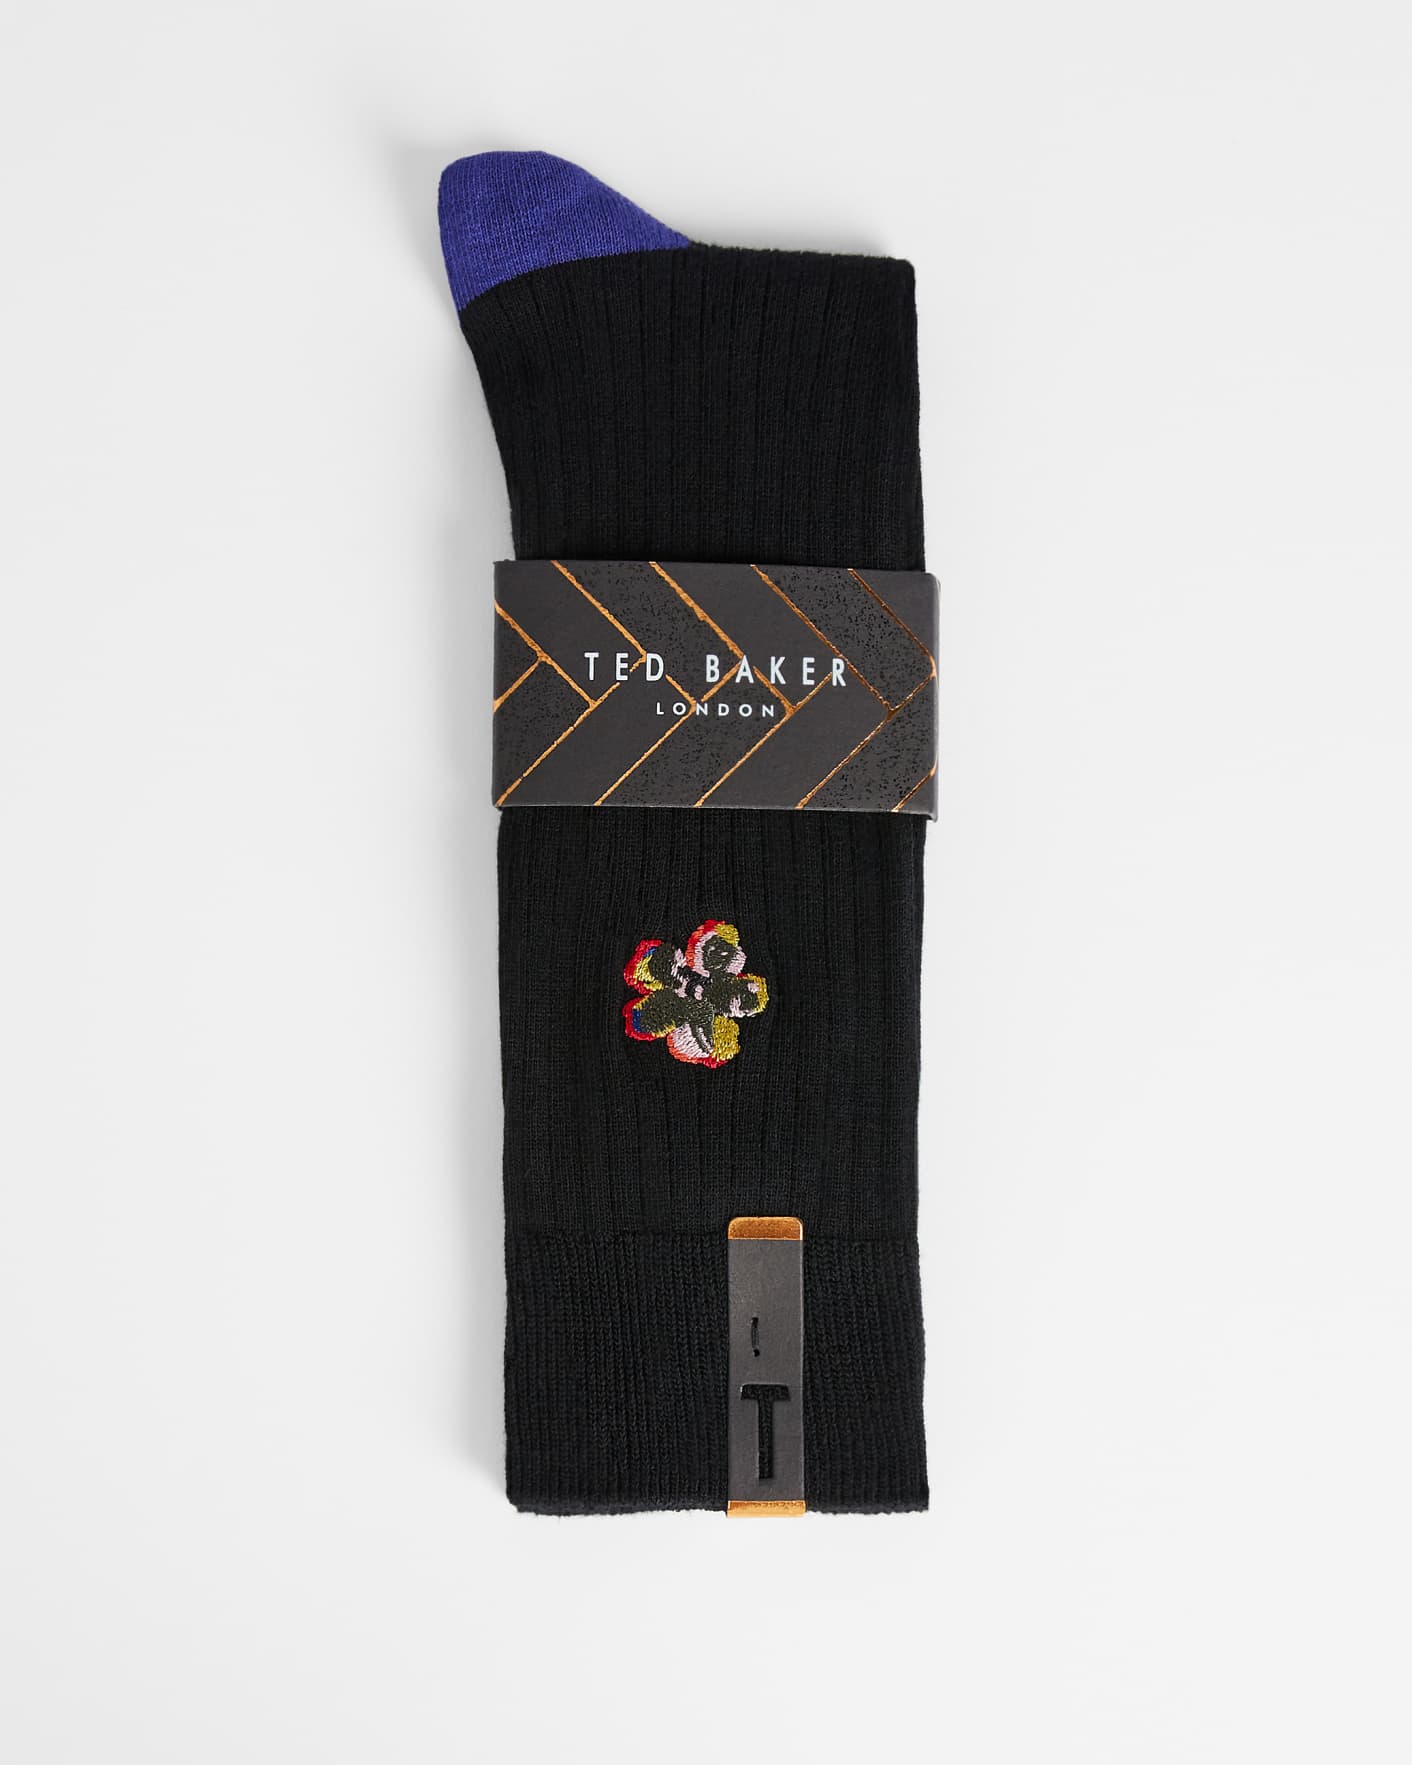 BLACK Flower Embroidery Sock Ted Baker